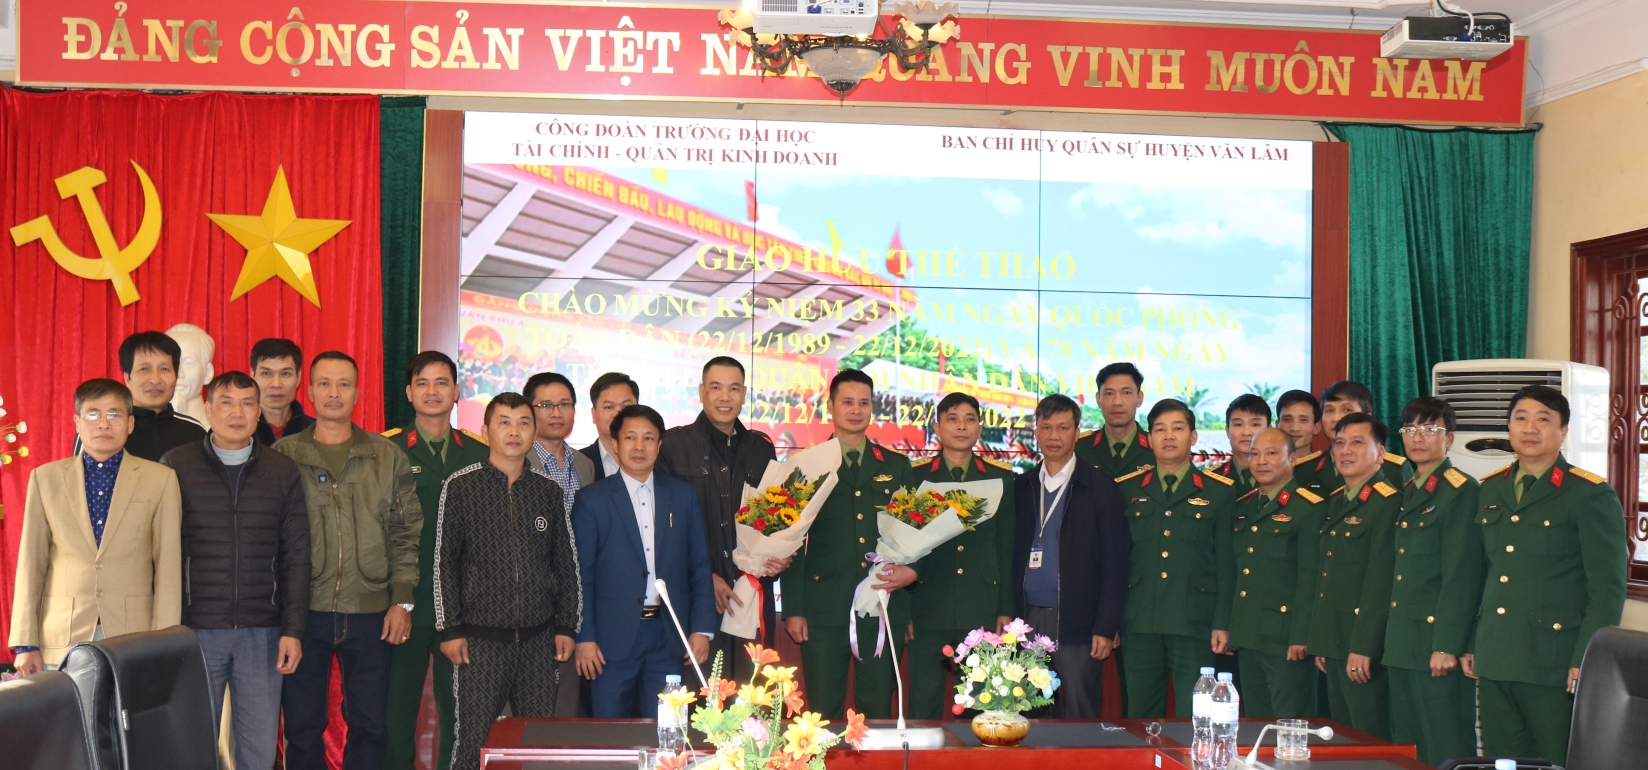 Giao hữu thể thao chào mừng kỷ niệm 78 năm Ngày thành lập Quân đội Nhân dân Việt Nam (22/12/1944 - 22/12/2022), 33 năm Ngày hội Quốc phòng toàn dân (22/12/1989 - 22/12/2022)